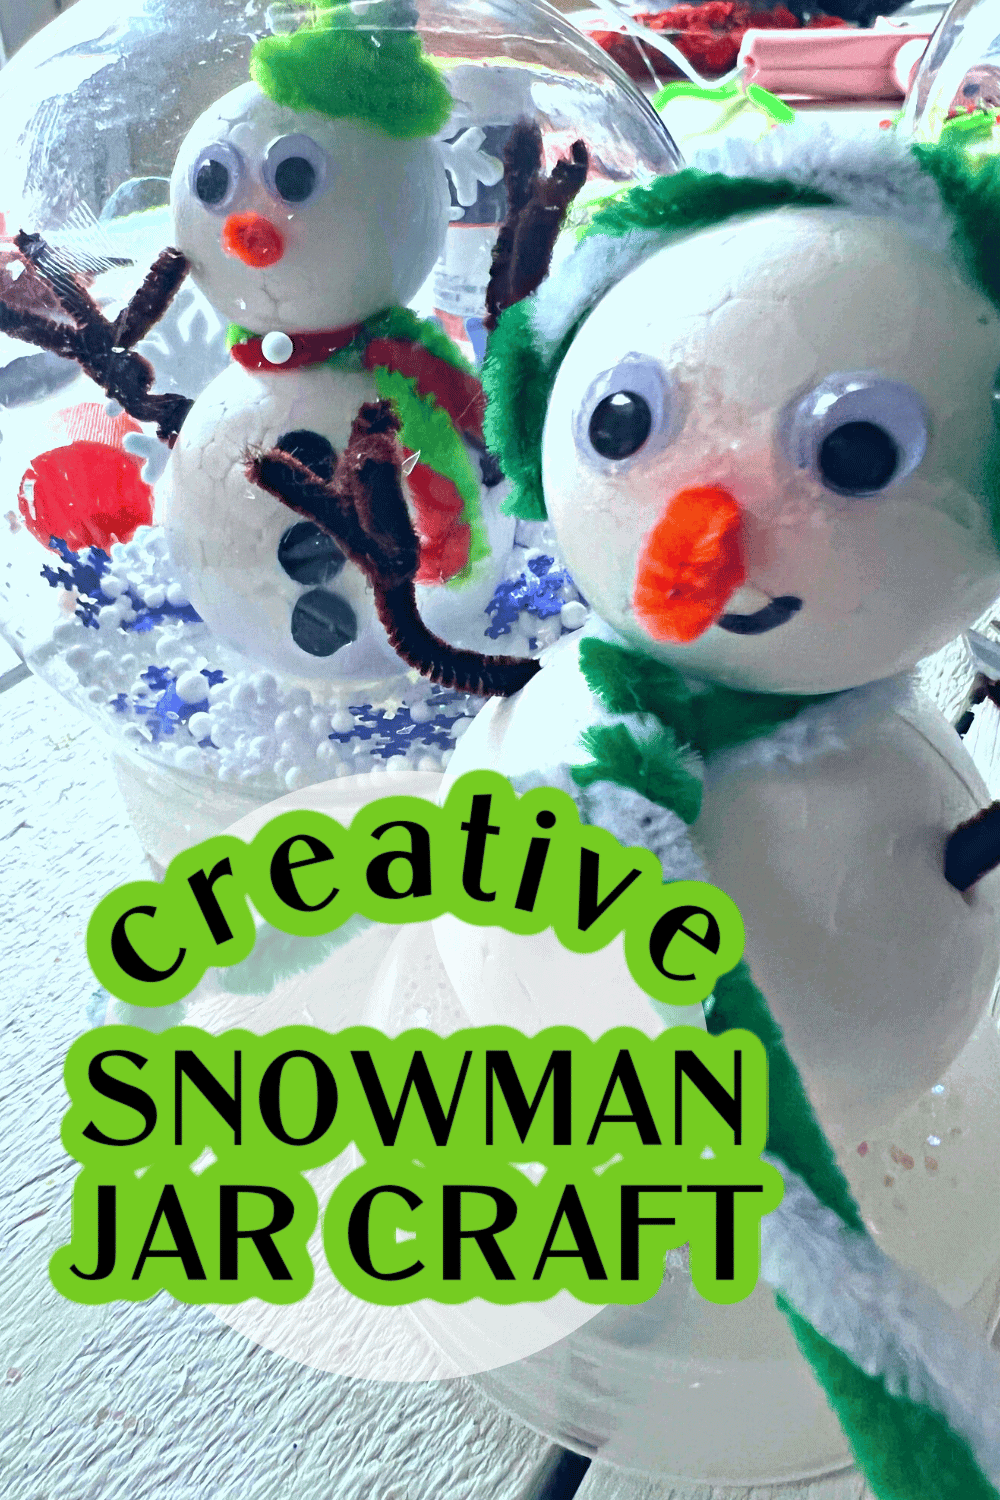 snowman jar craft idea to make a snowman pet 